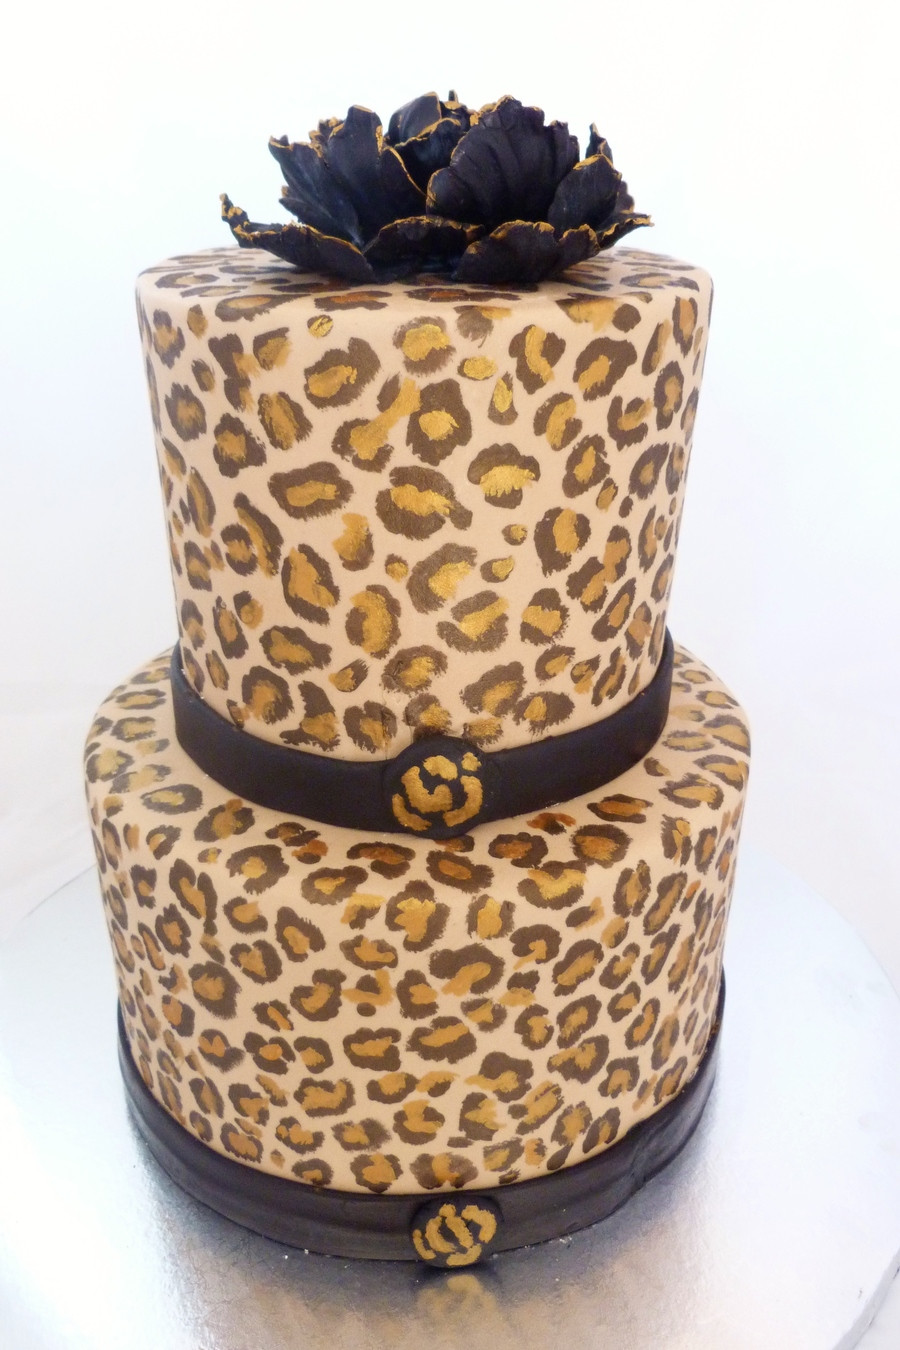 Cheetah Birthday Cake
 Handpainted Cheetah Print Cake CakeCentral